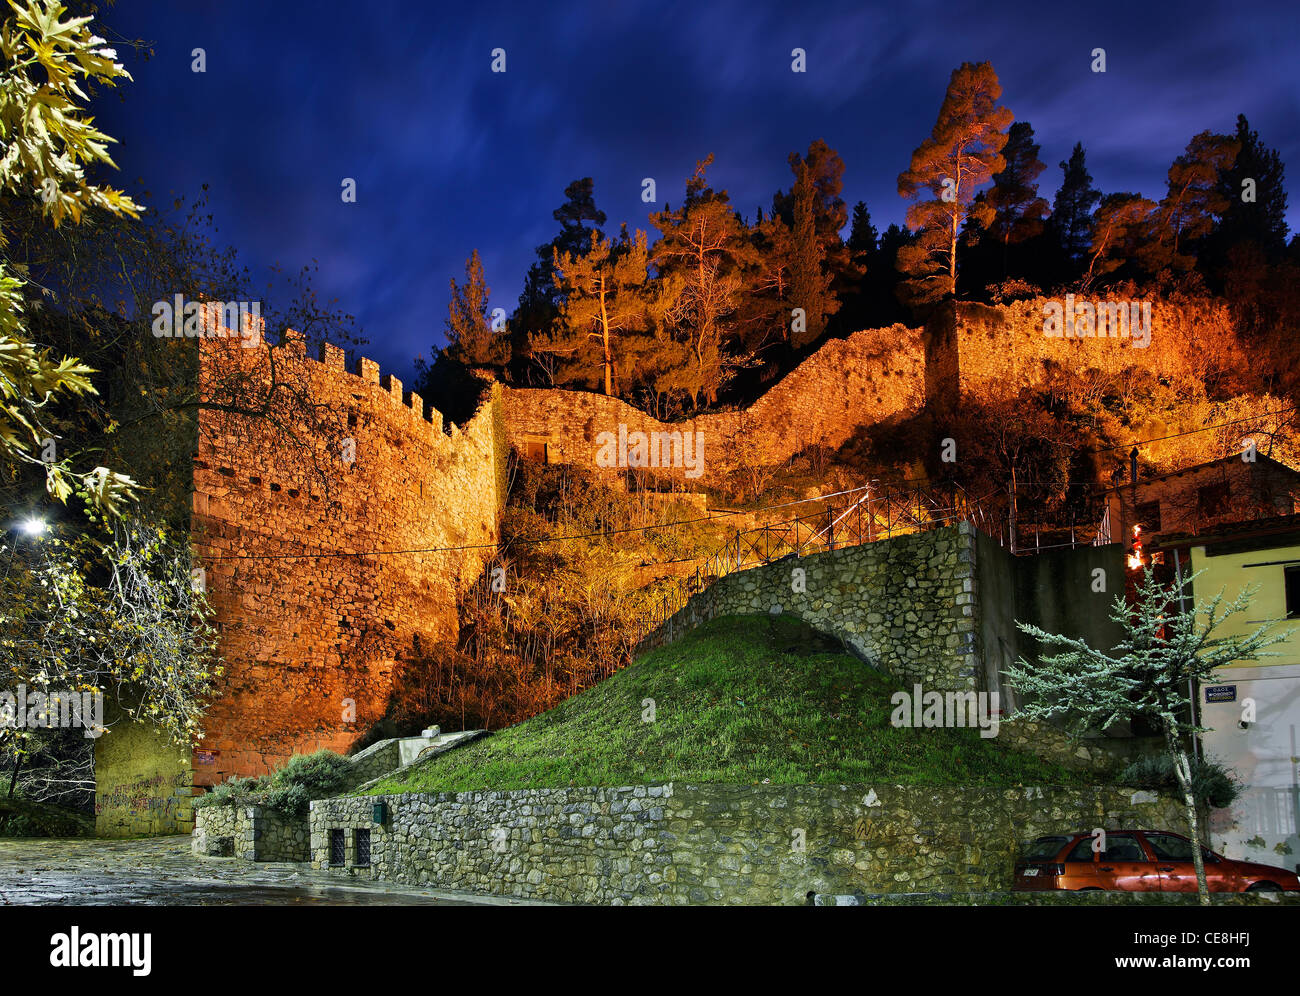 Le château catalan de Livadia, ville de Béotie, la Grèce Centrale, juste à côté de Krya springs et la rivière Erkyna de nuit Banque D'Images